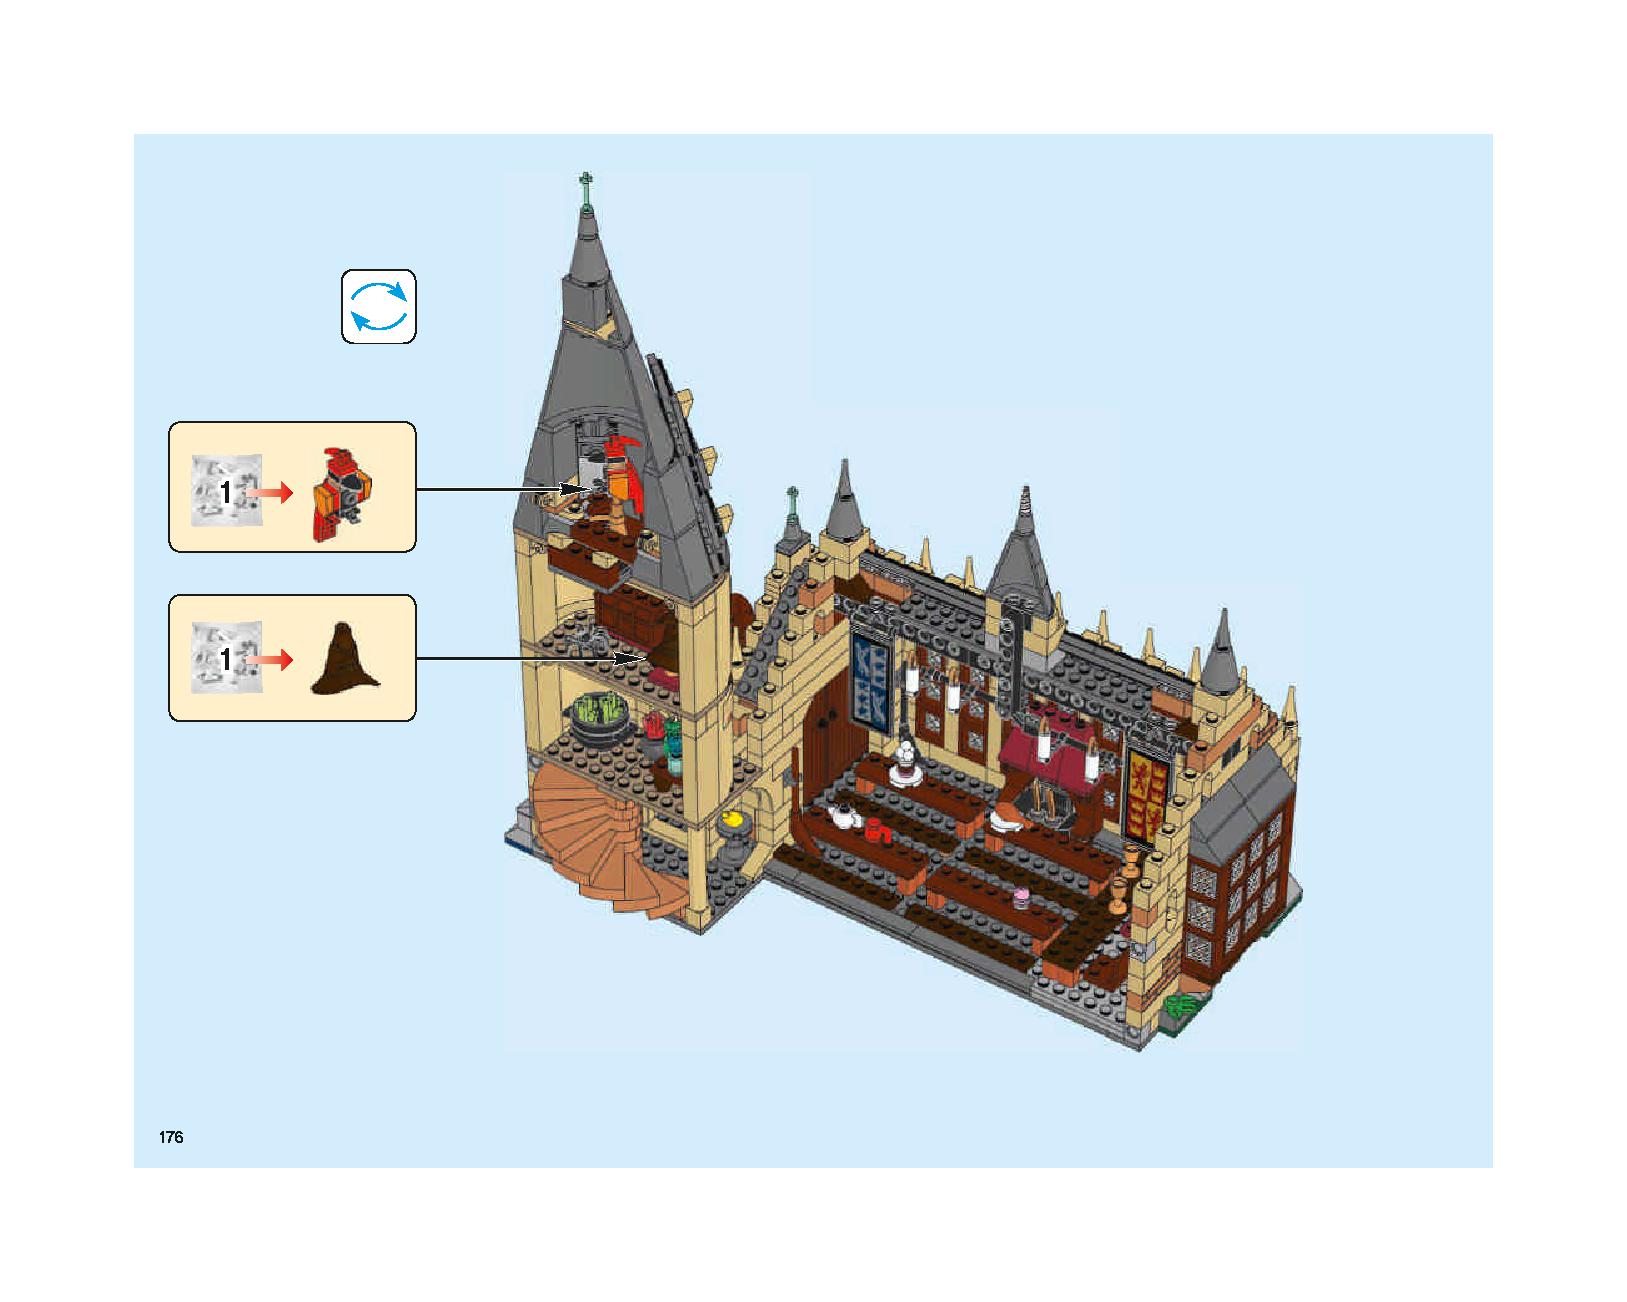 ホグワーツの大広間 75954 レゴの商品情報 レゴの説明書・組立方法 176 page